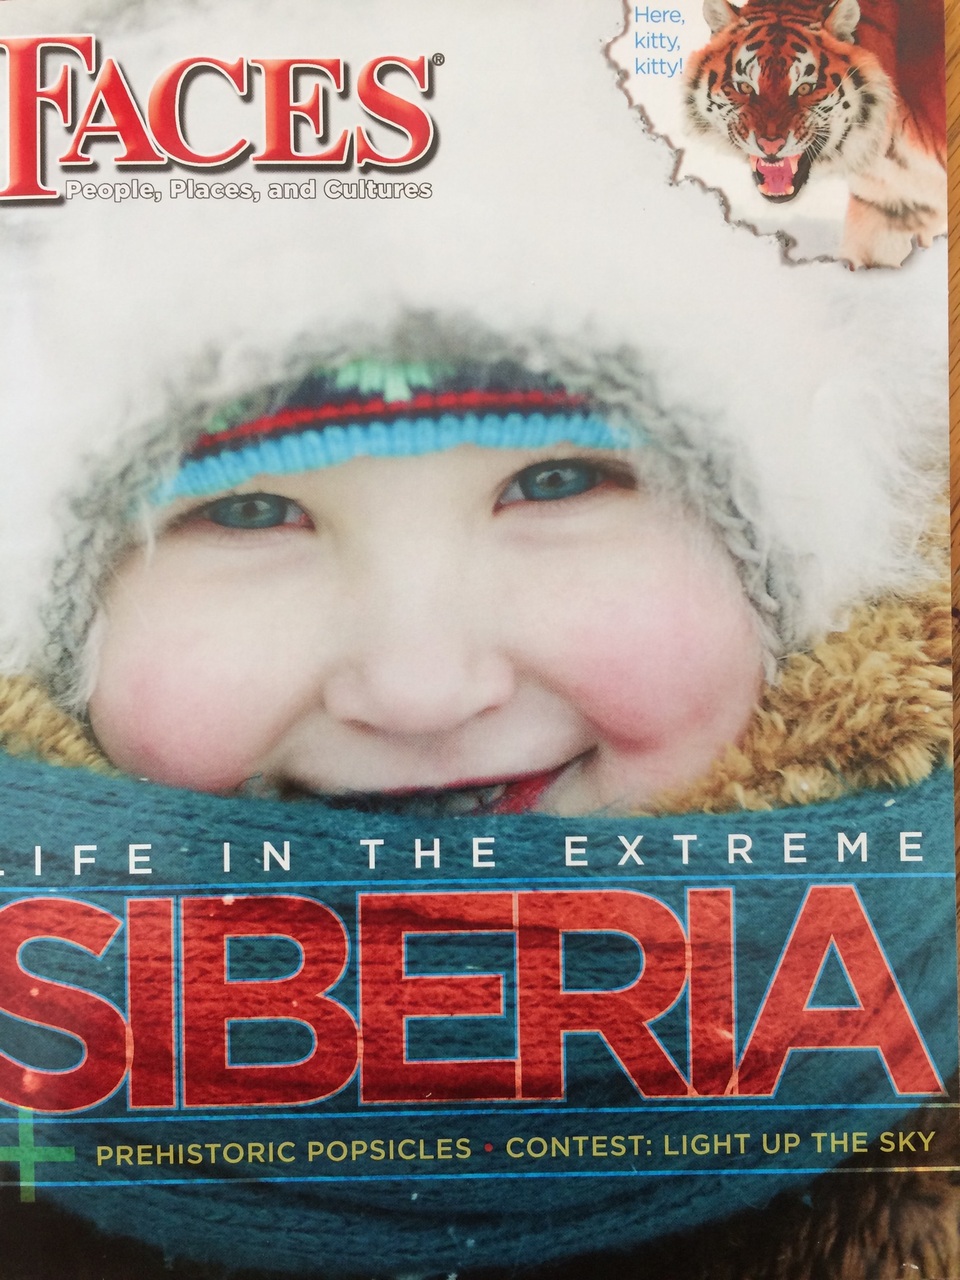 "Siberia: Vast and Spectacular!"